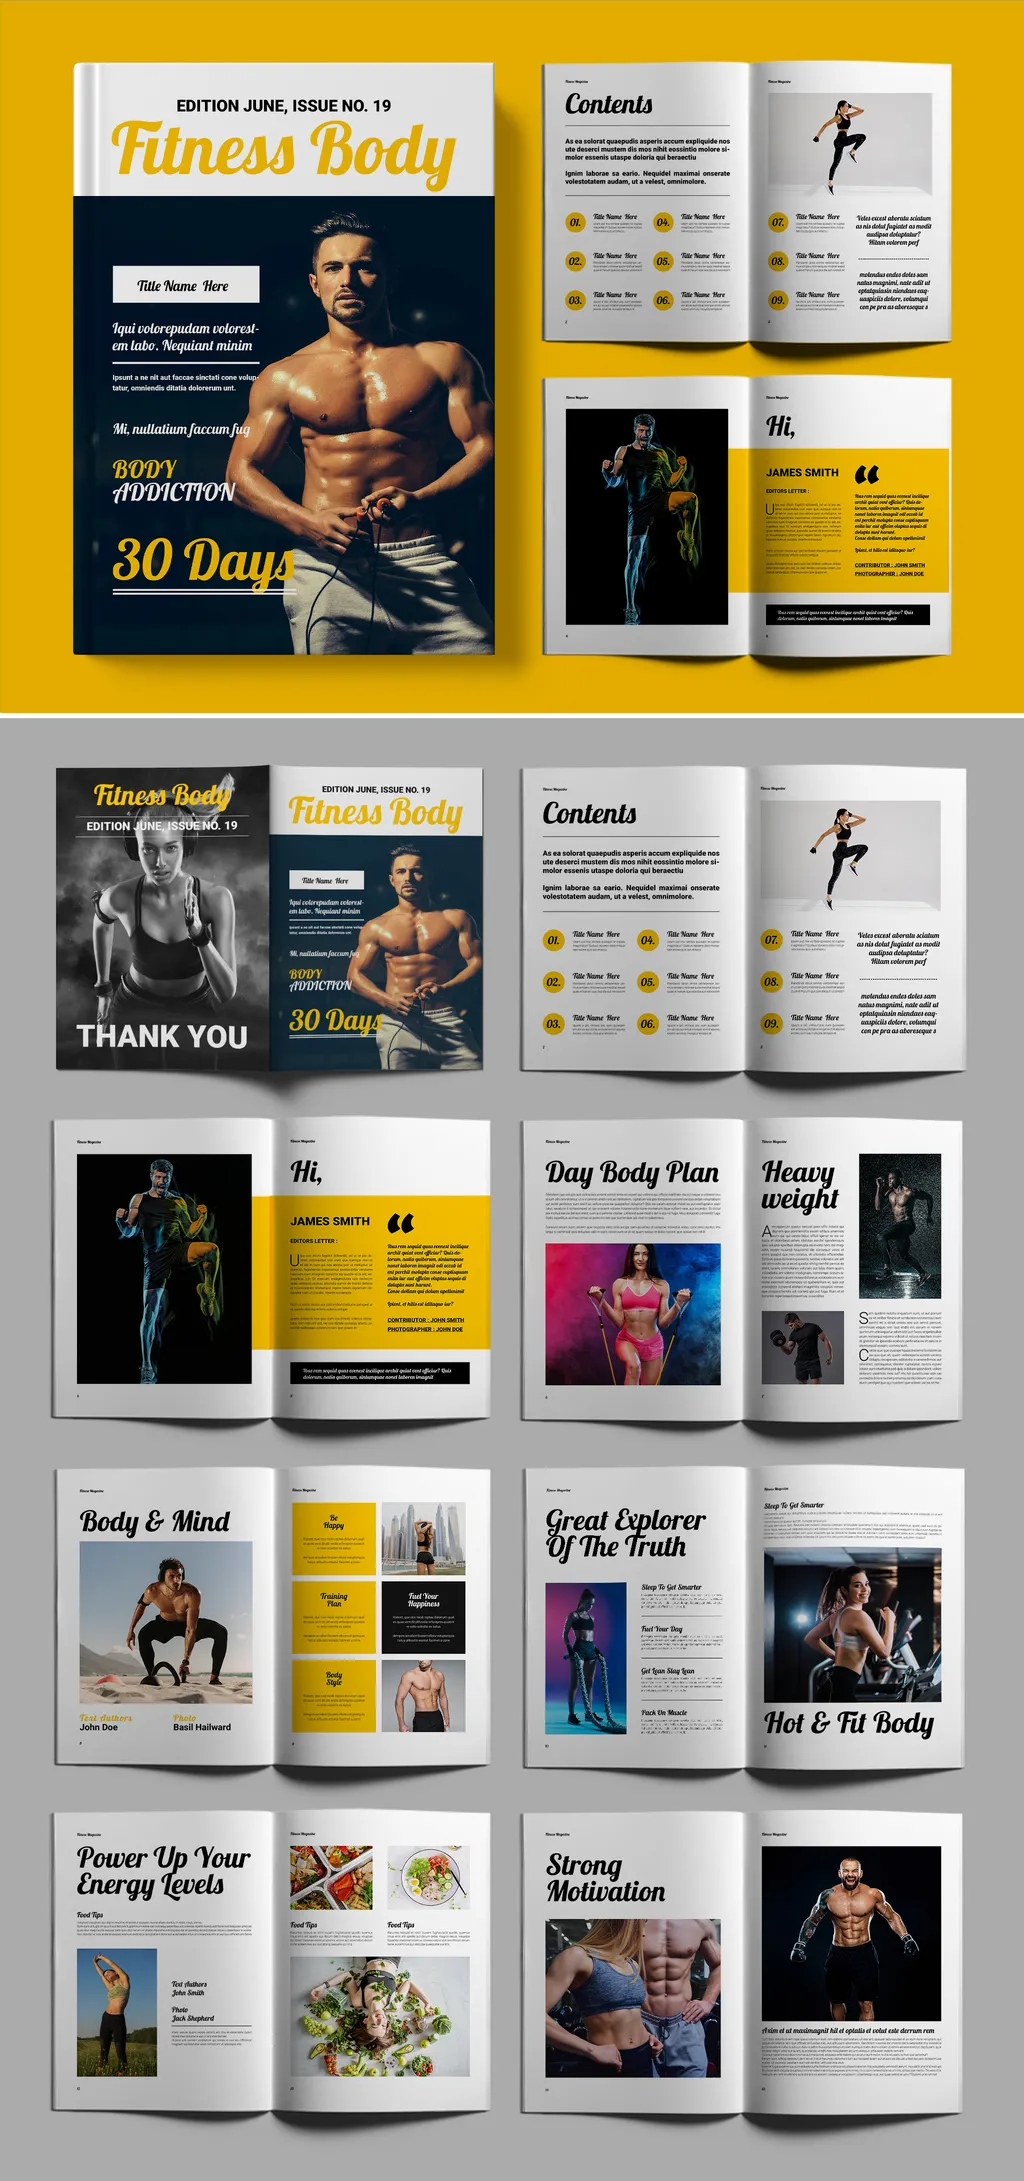 Adobestock - Fitness Body Magazine 757163775